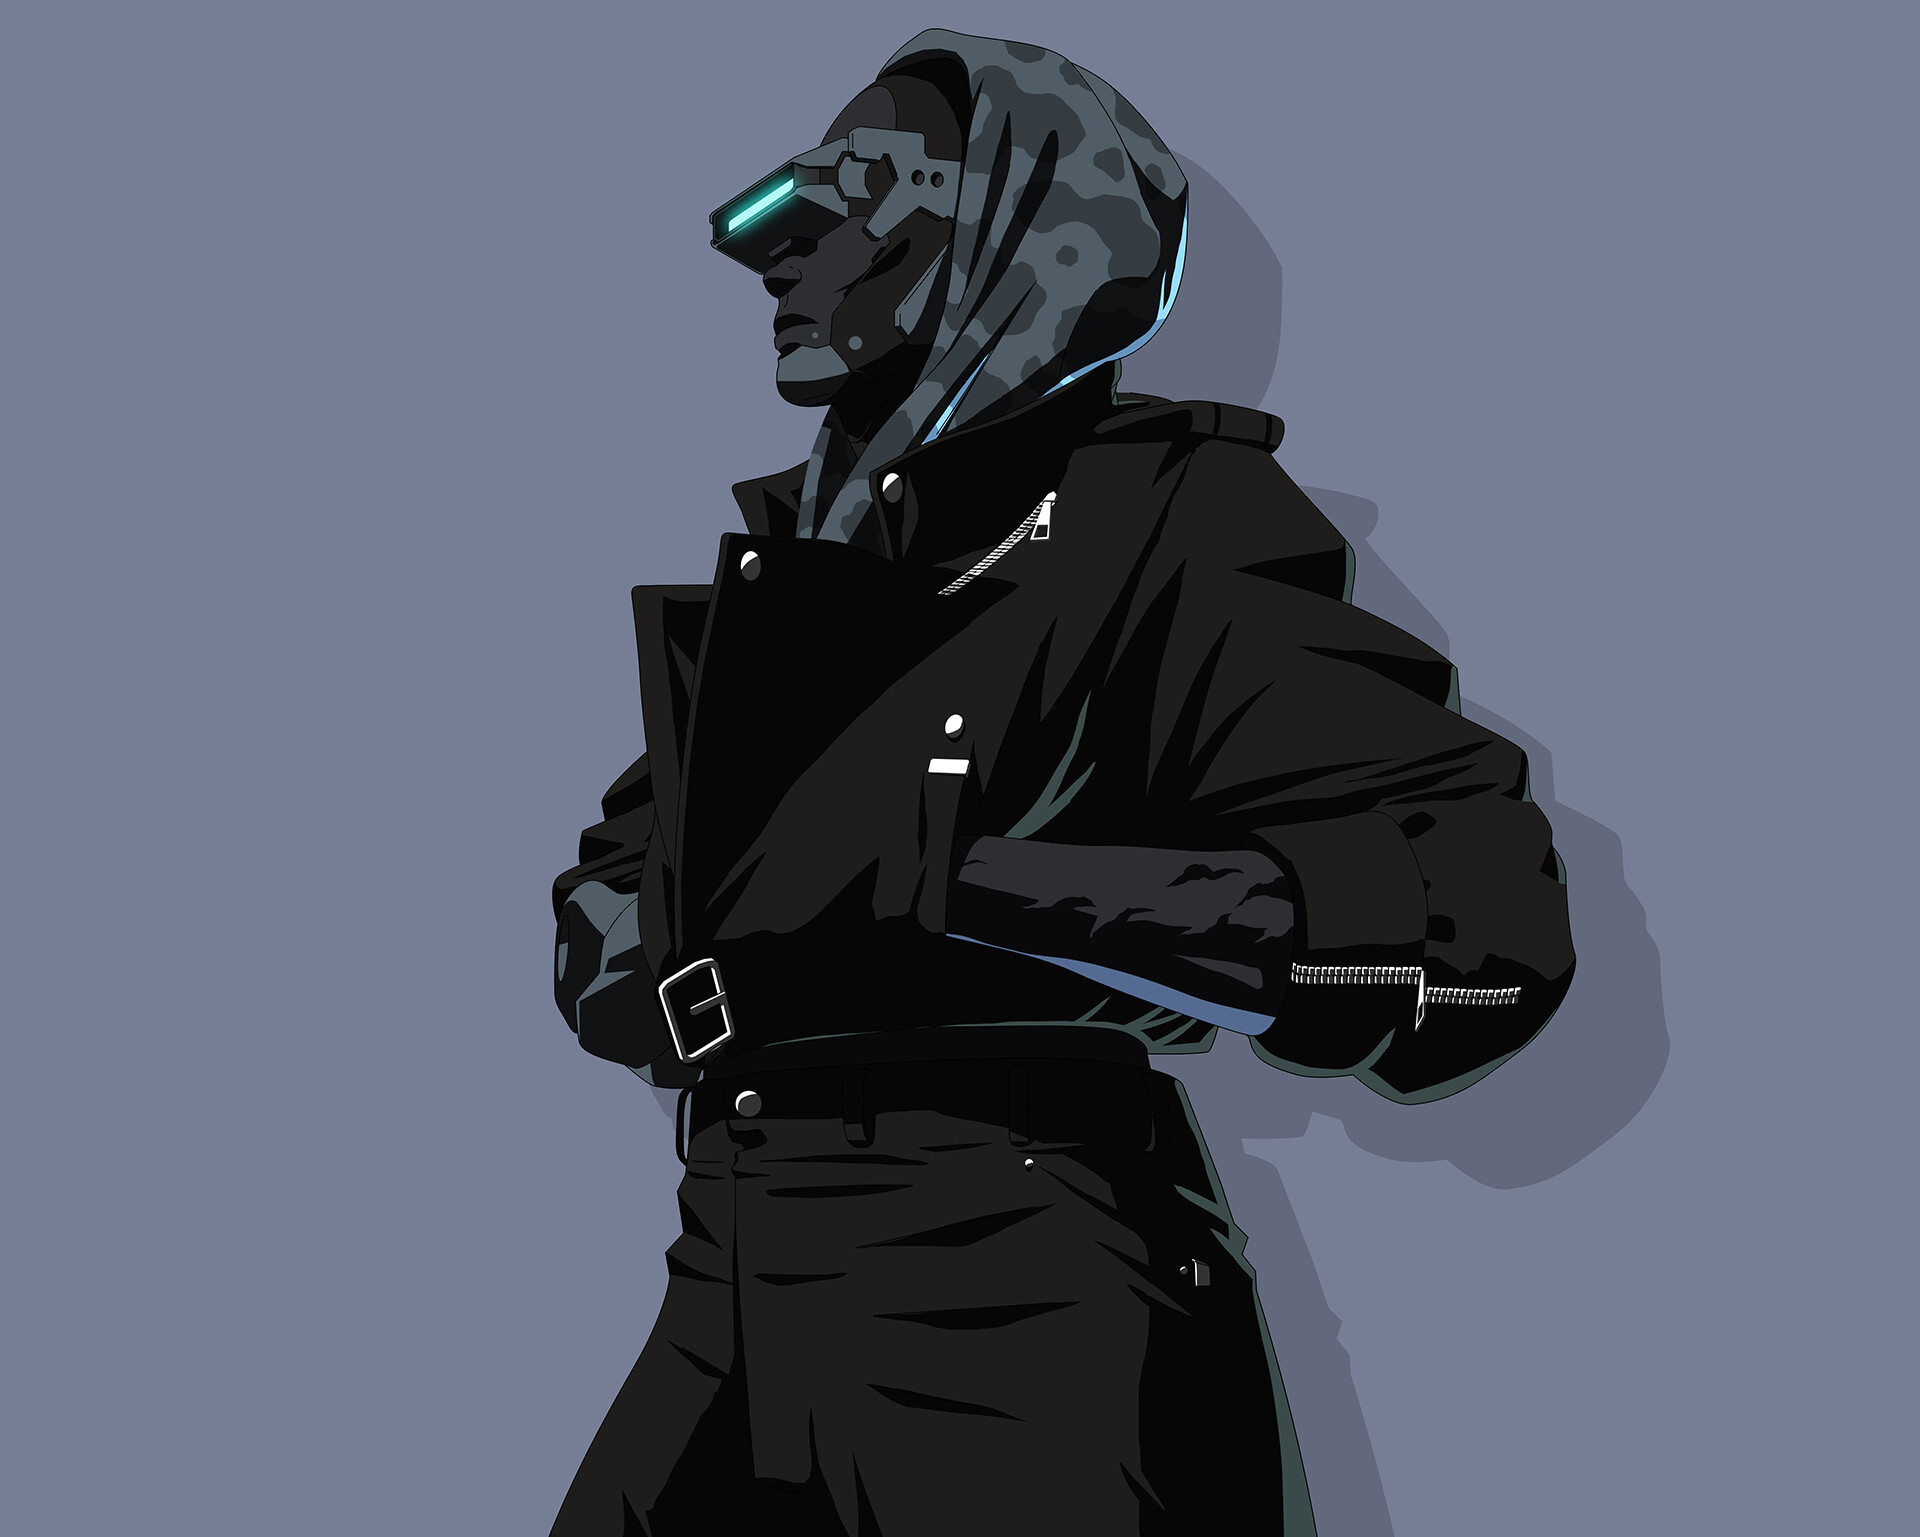 ArtStation - Cyberpunk Techwear Characters